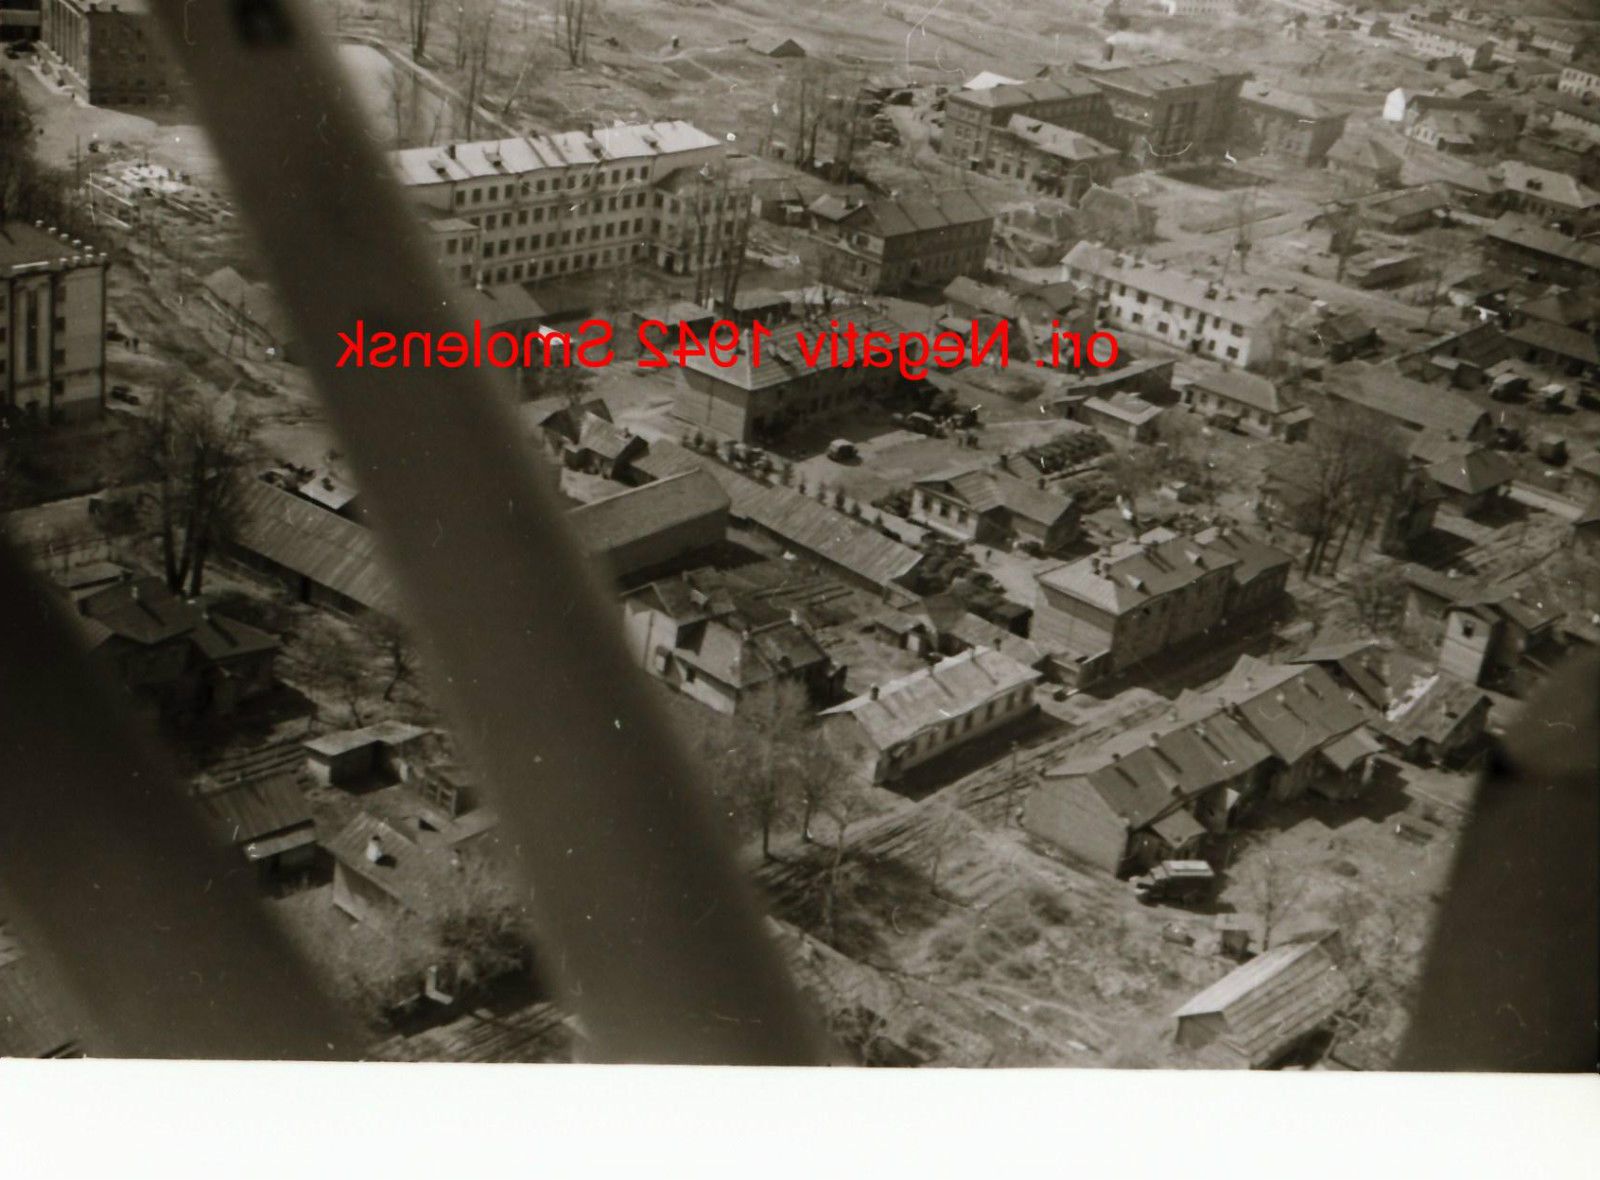 Foto 2 WK, orig. negativ, Ostfront,Smolensk, Luftaufnahme, Gebäude, Wohnblock.jpg